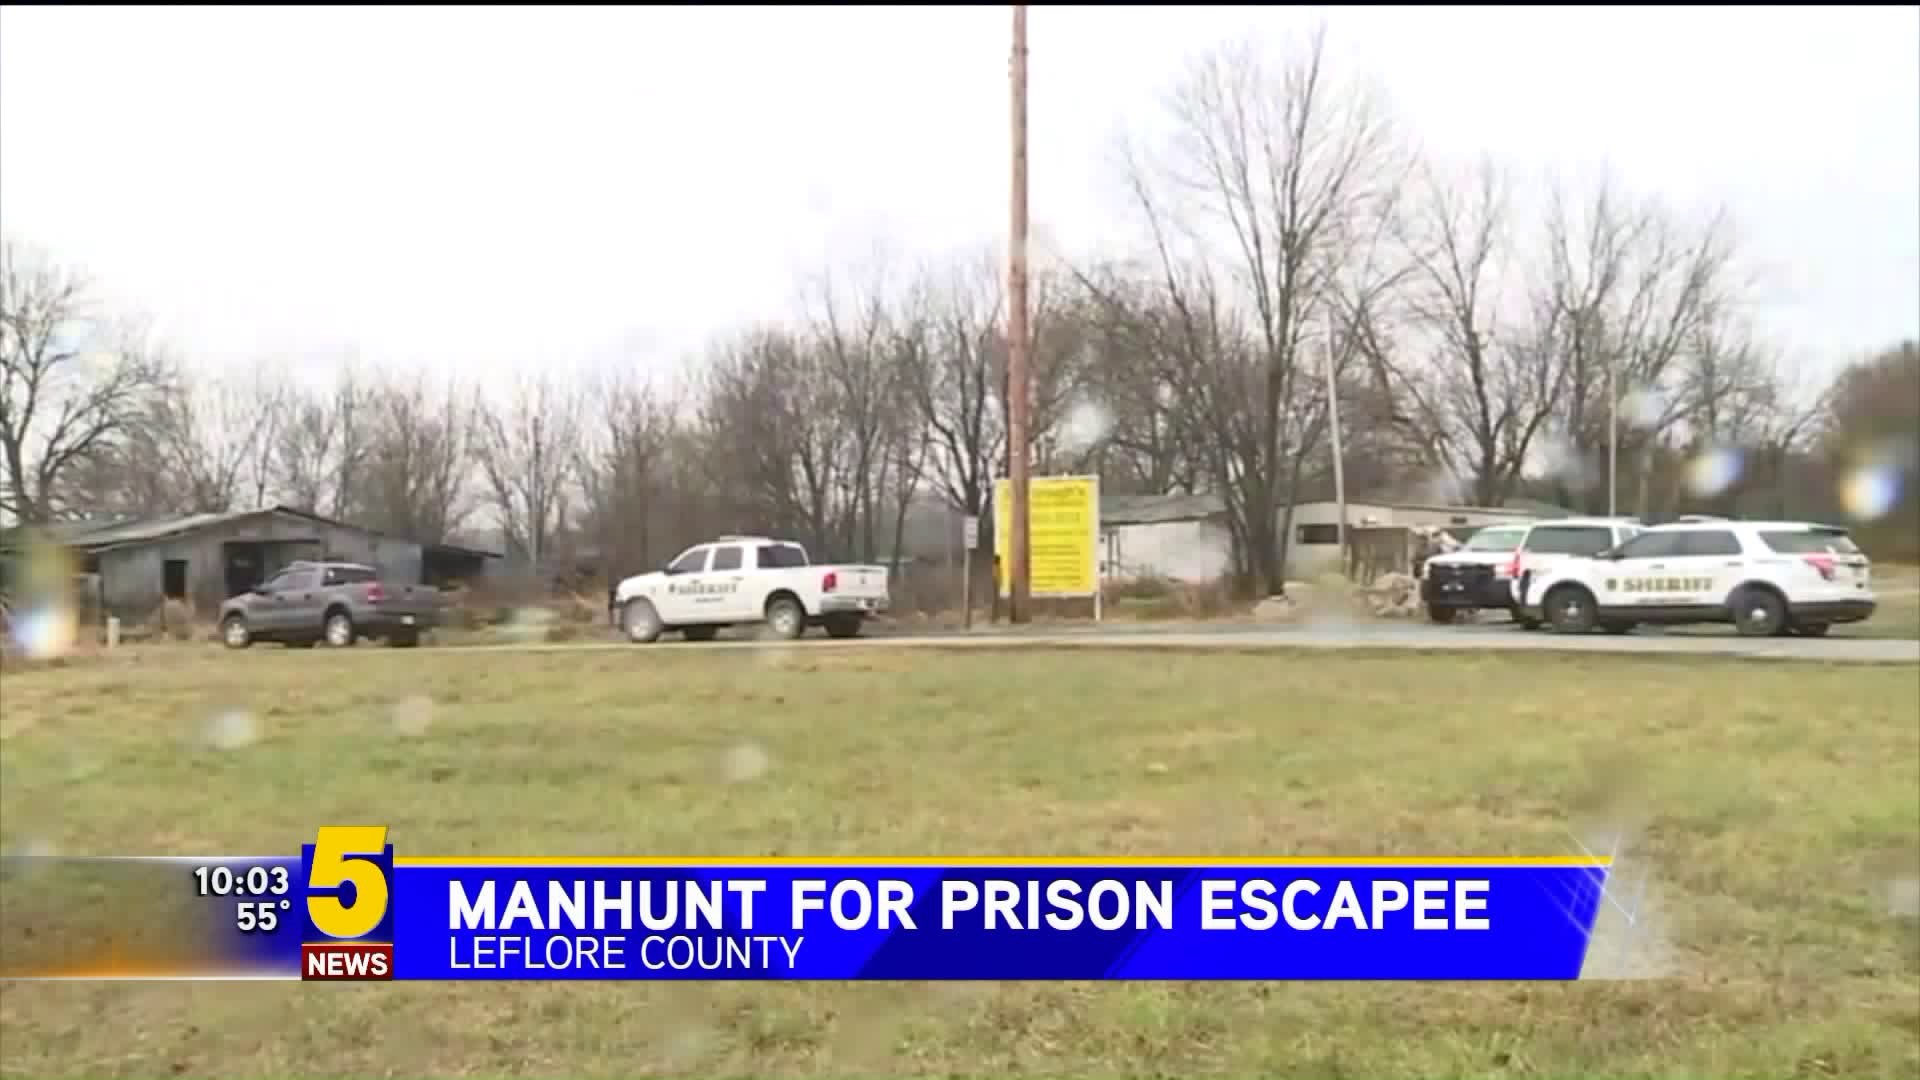 Manhunt For Prison Escapee